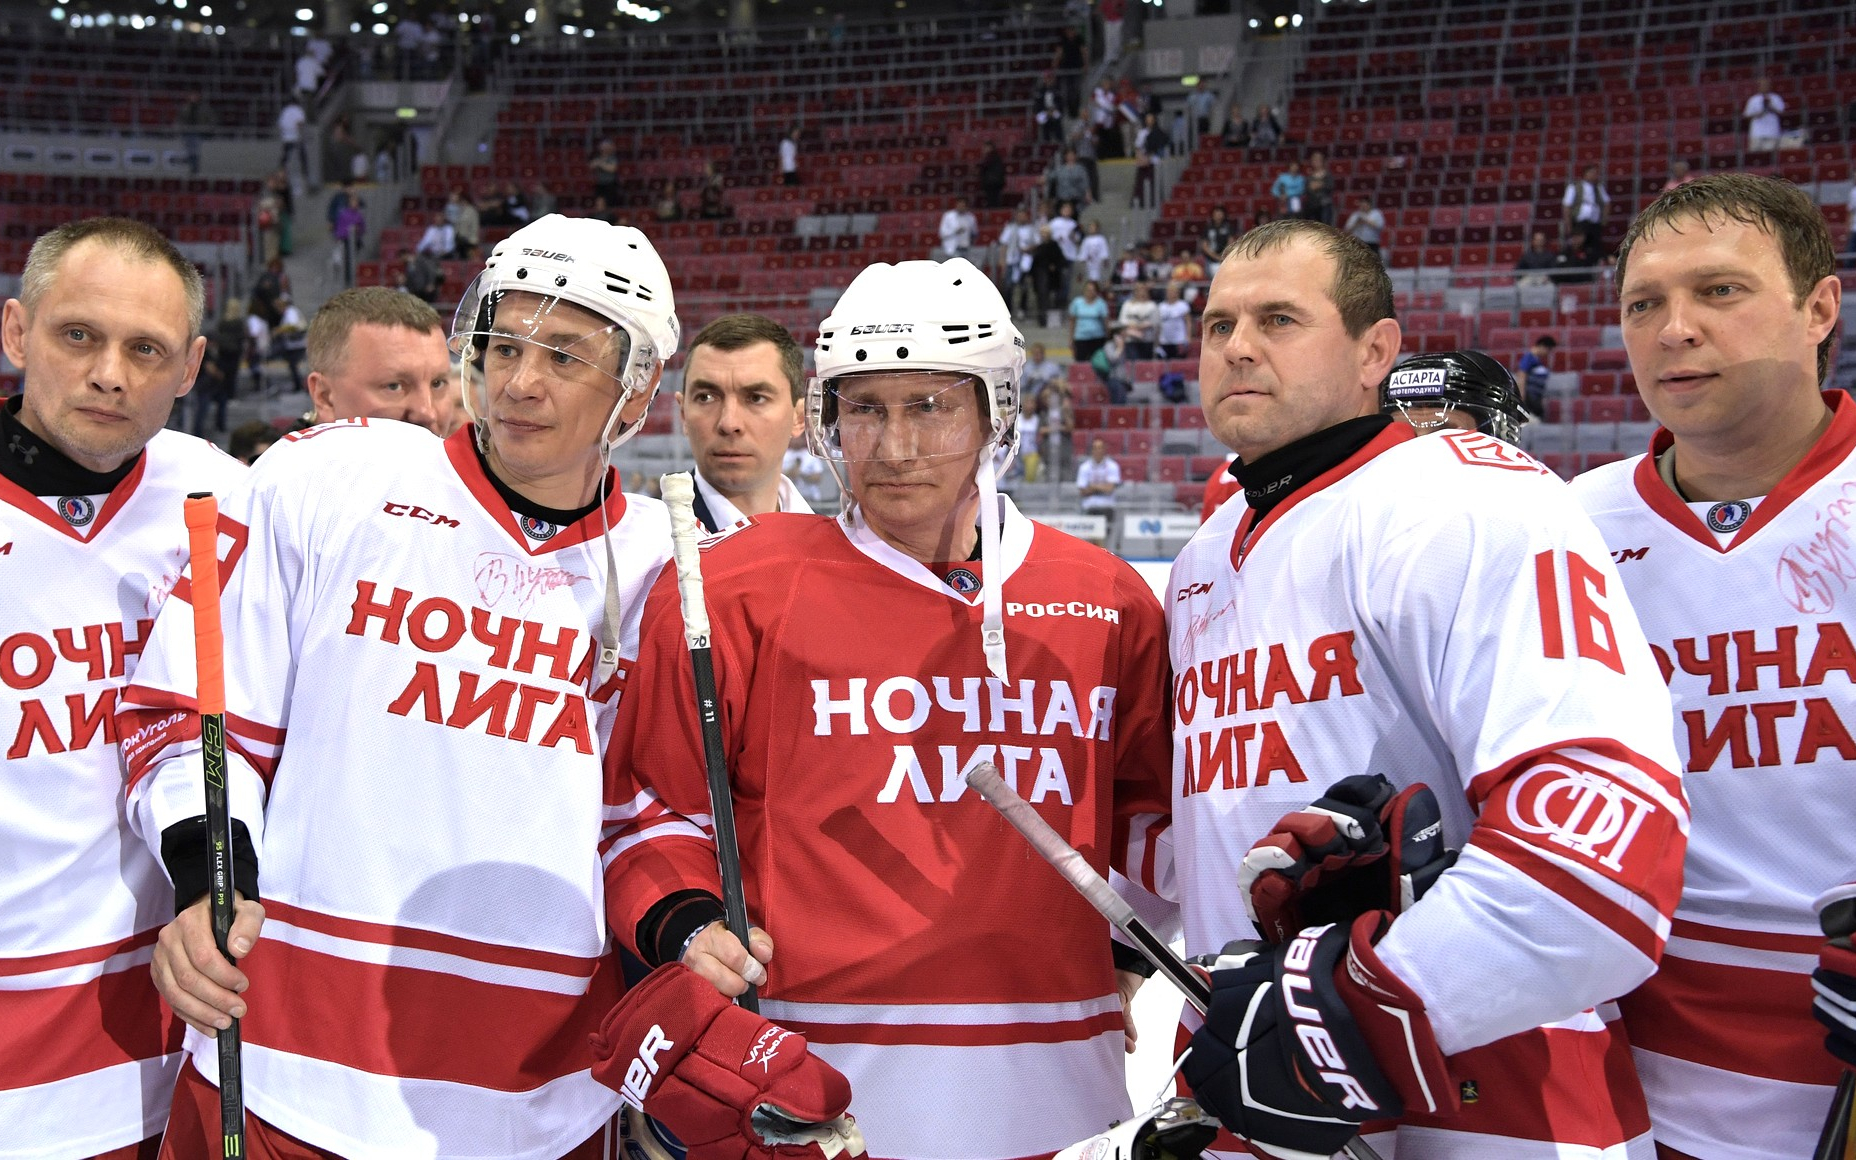 Хоккеисты-любители месте с президентом России Владимиром Путиным после одного из выставочных матчей в Сочи